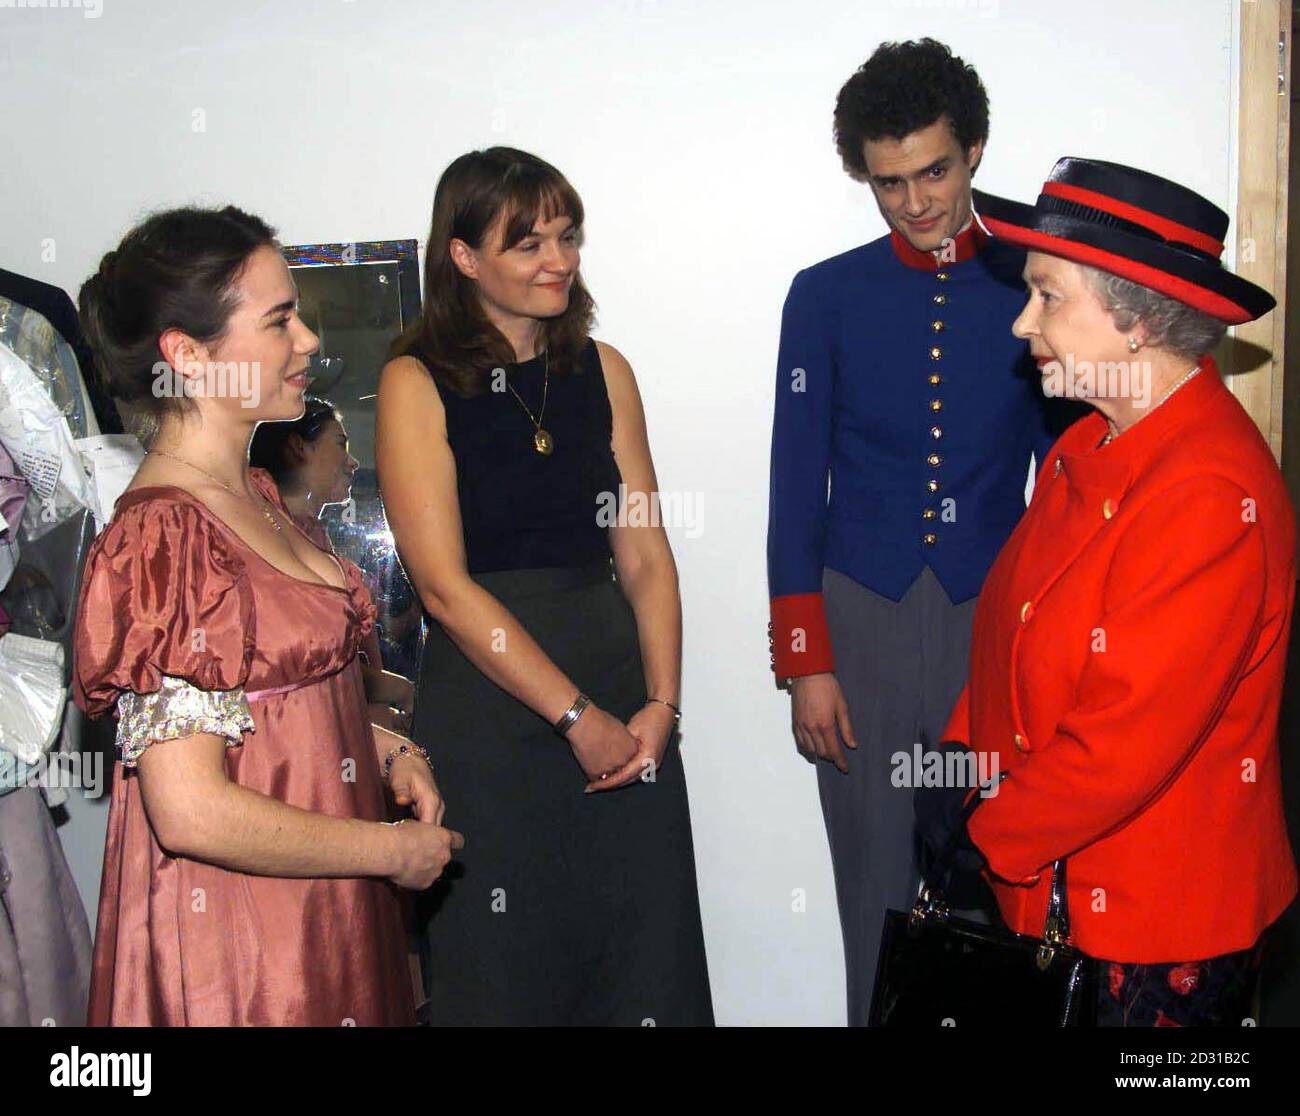 Die Königin in der Garderobe, nach der Eröffnung der neuen Räumlichkeiten der Royal Academy of Dramatic Art in London. Während des Besuchs traf die Königin, begleitet von Lord Attenborough, Studenten und Prominente, die mit der Akademie verbunden waren. Stockfoto